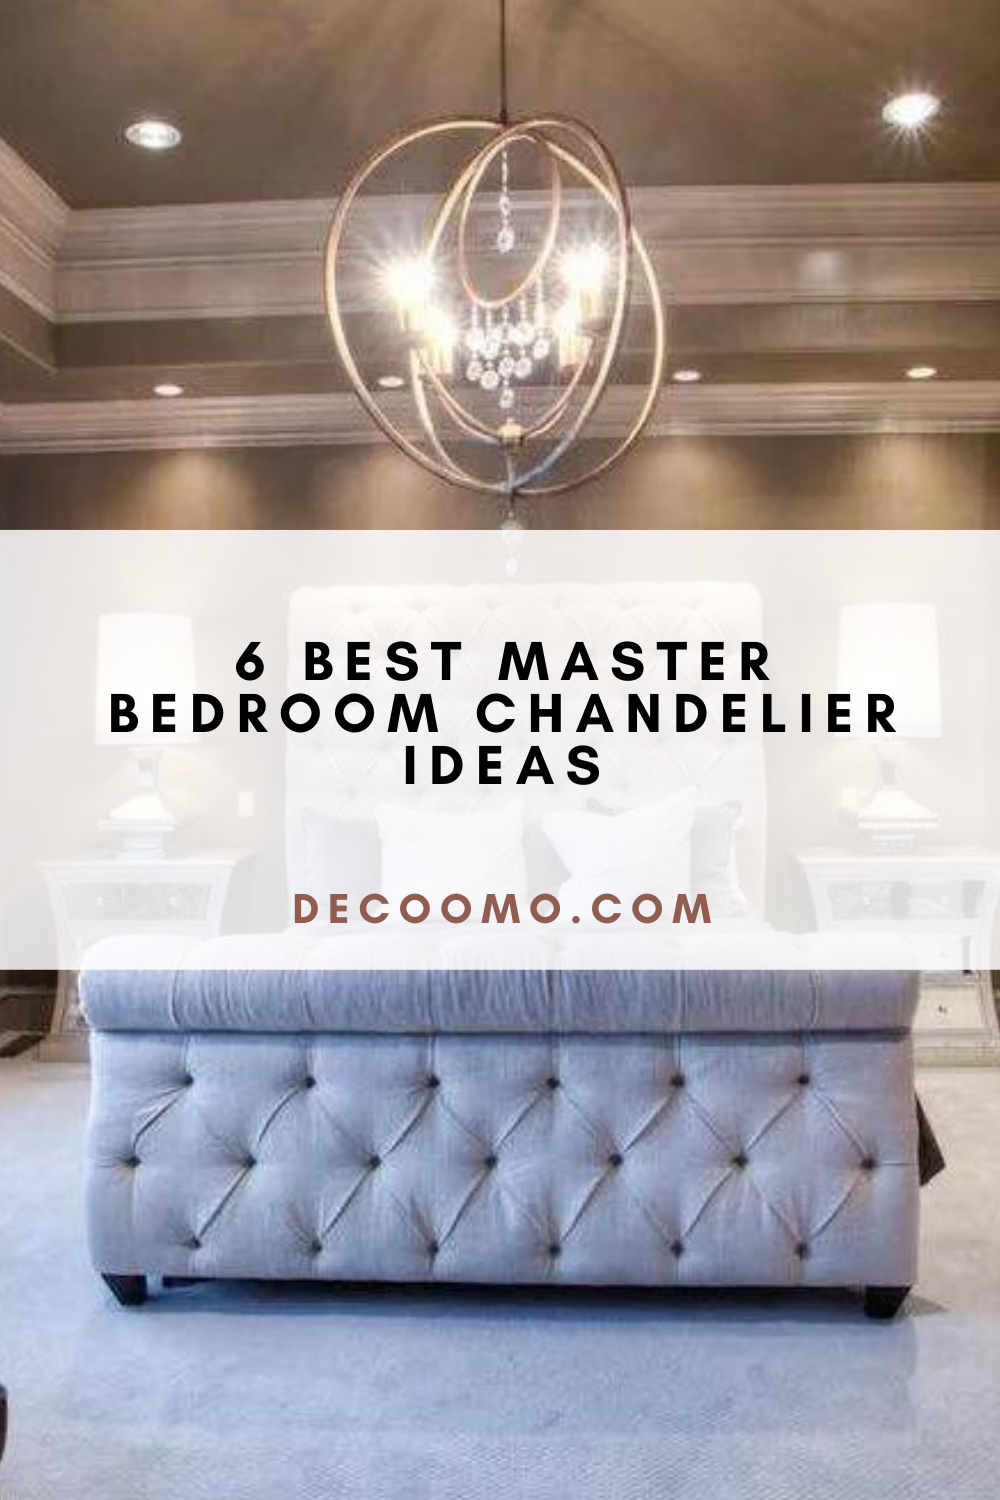 Best Master Bedroom Chandelier Ideas DECOOMO